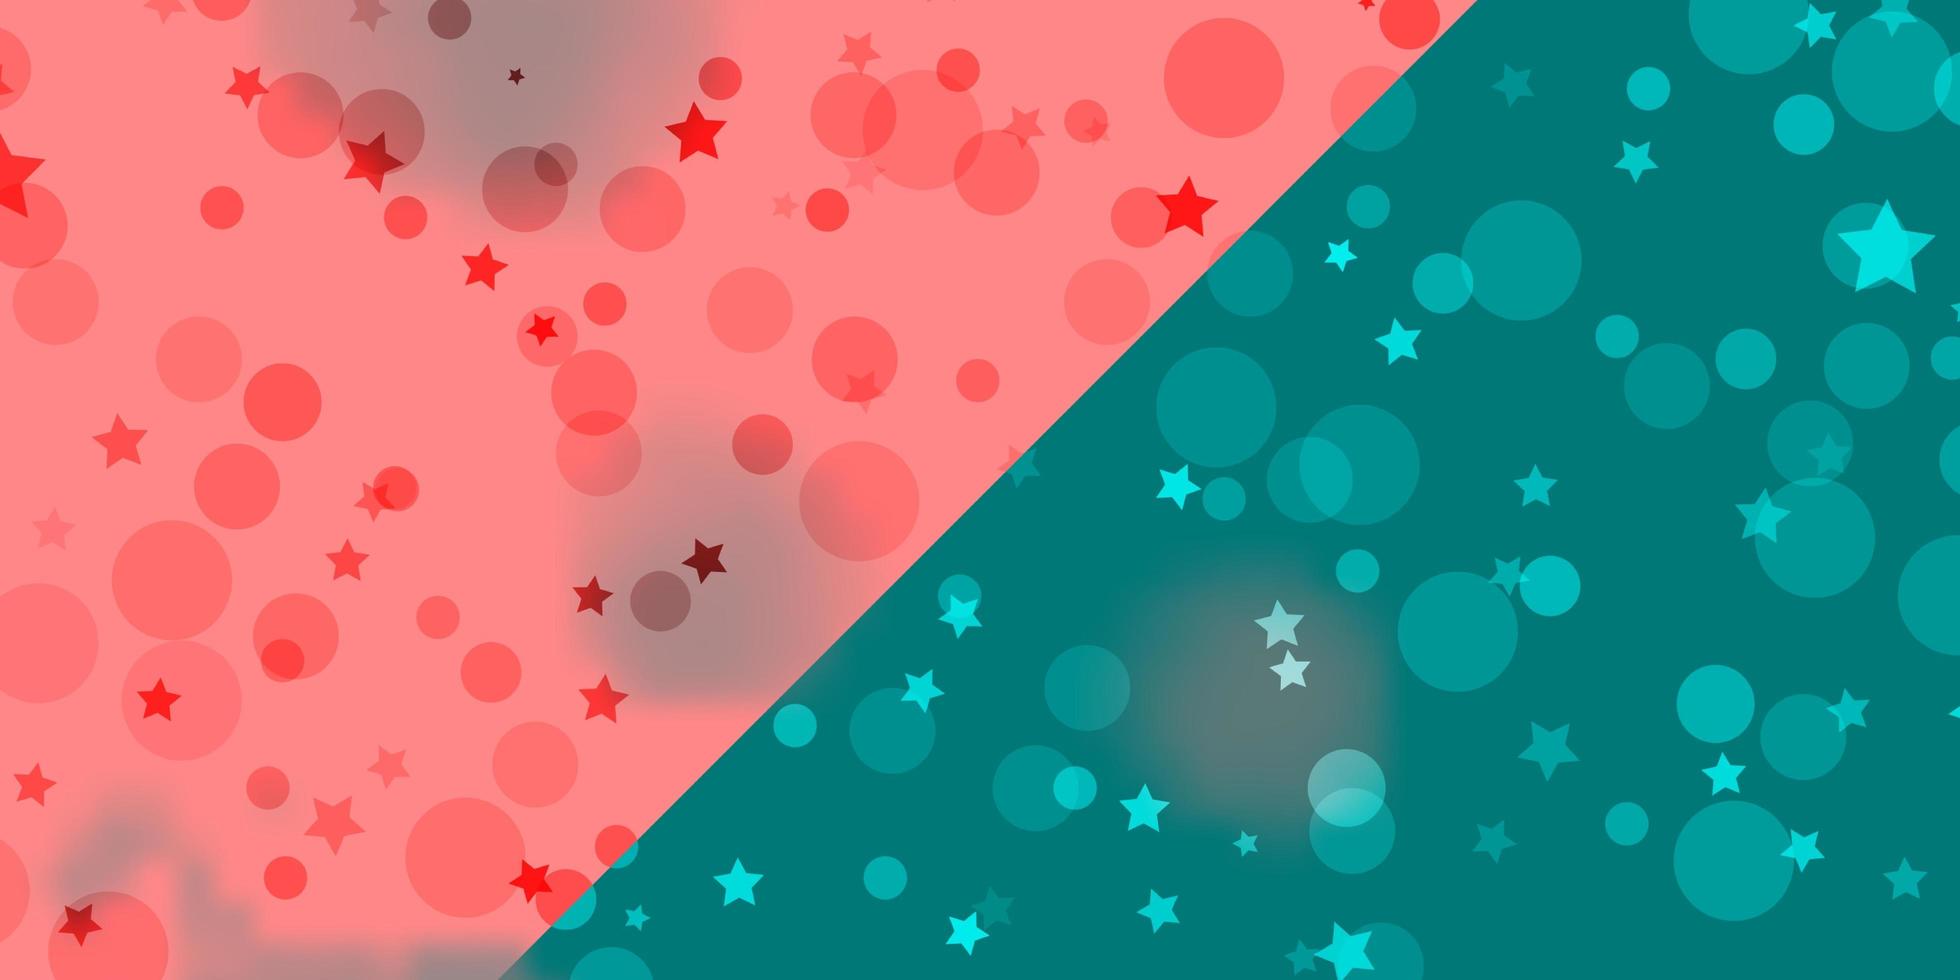 vectorpatroon met cirkels, sterren. illustratie met set van kleurrijke abstracte bollen, sterren. ontwerp voor behang, stoffenmakers. vector